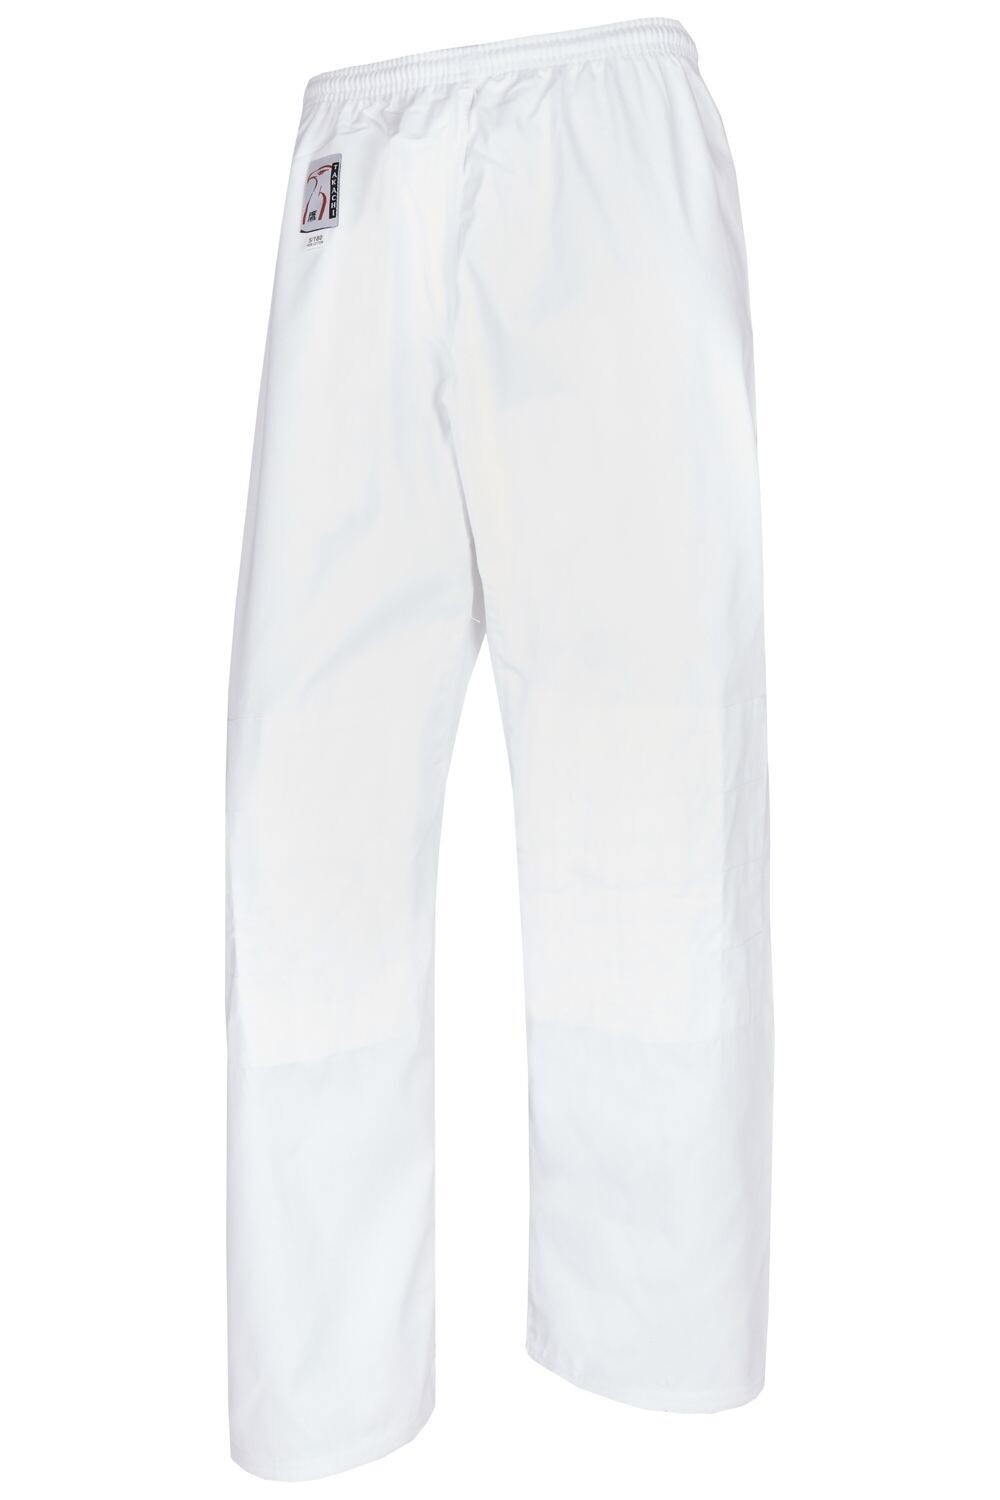 Weiße Judohose aus Baumwolle, Größe: 160 cm